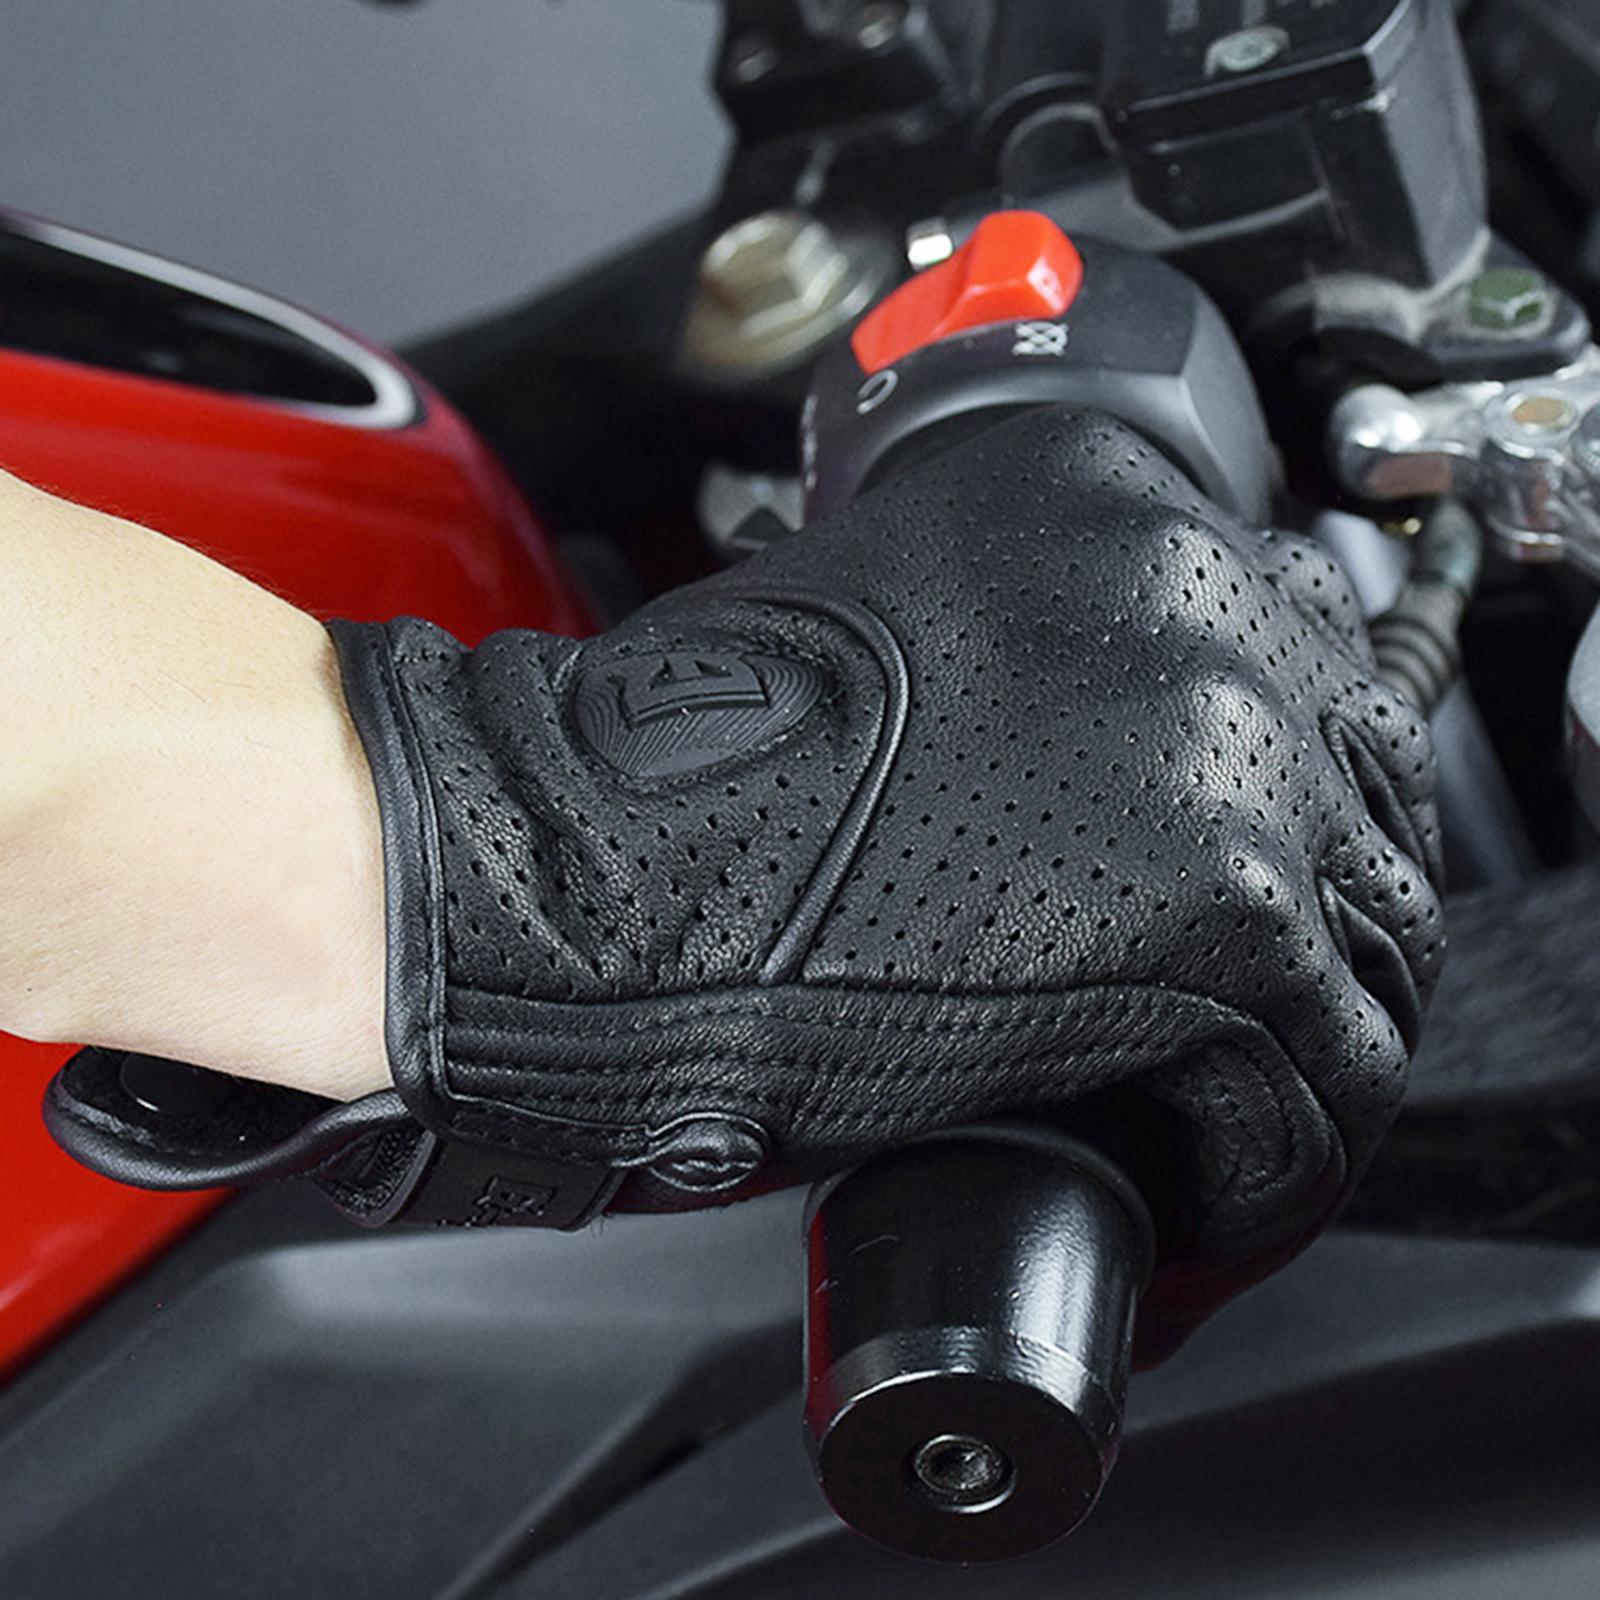 Leather Motorbike Gloves Summer Full Finger Touchscreen for Men Women